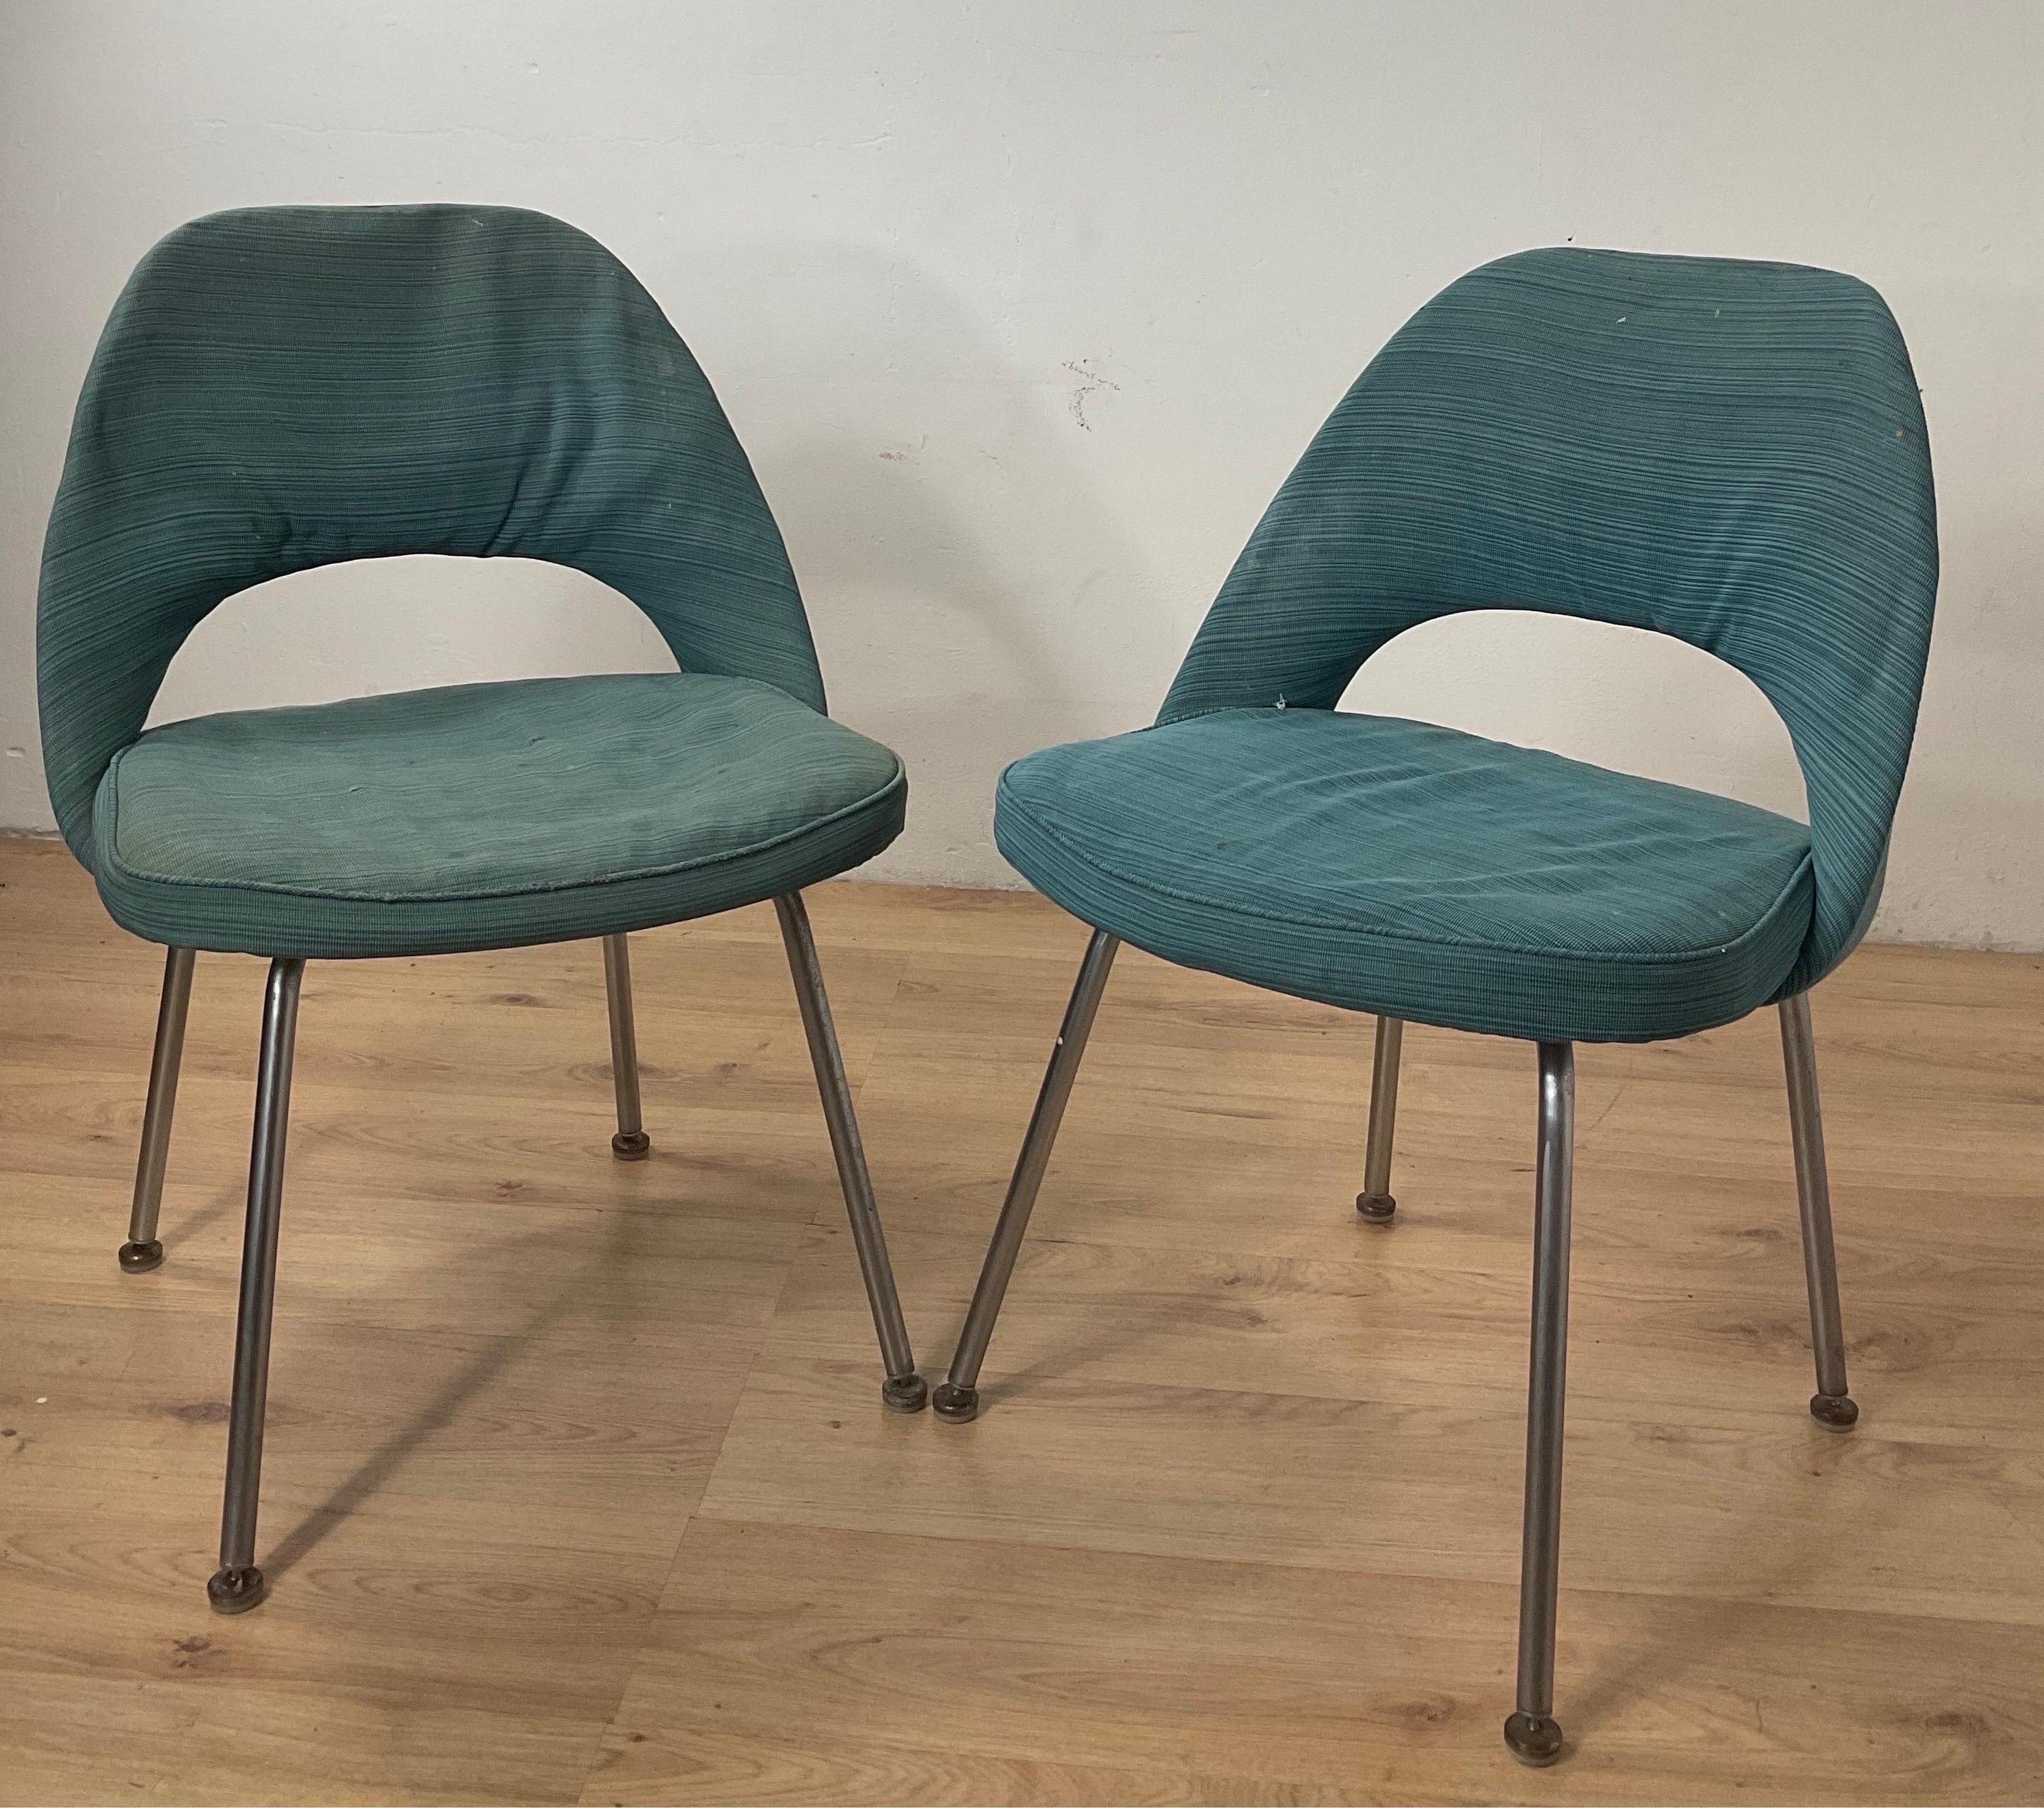 Der Saarinen Conference ist ein Stuhl, der aus der Idee entstanden ist, den Chefsessel in etwas Bequemeres und Eleganteres zu verwandeln. Ein Stuhl, der selbst in einem Sitzungssaal ein Möbelstück mit großem Charme war. Um sie auch in einem